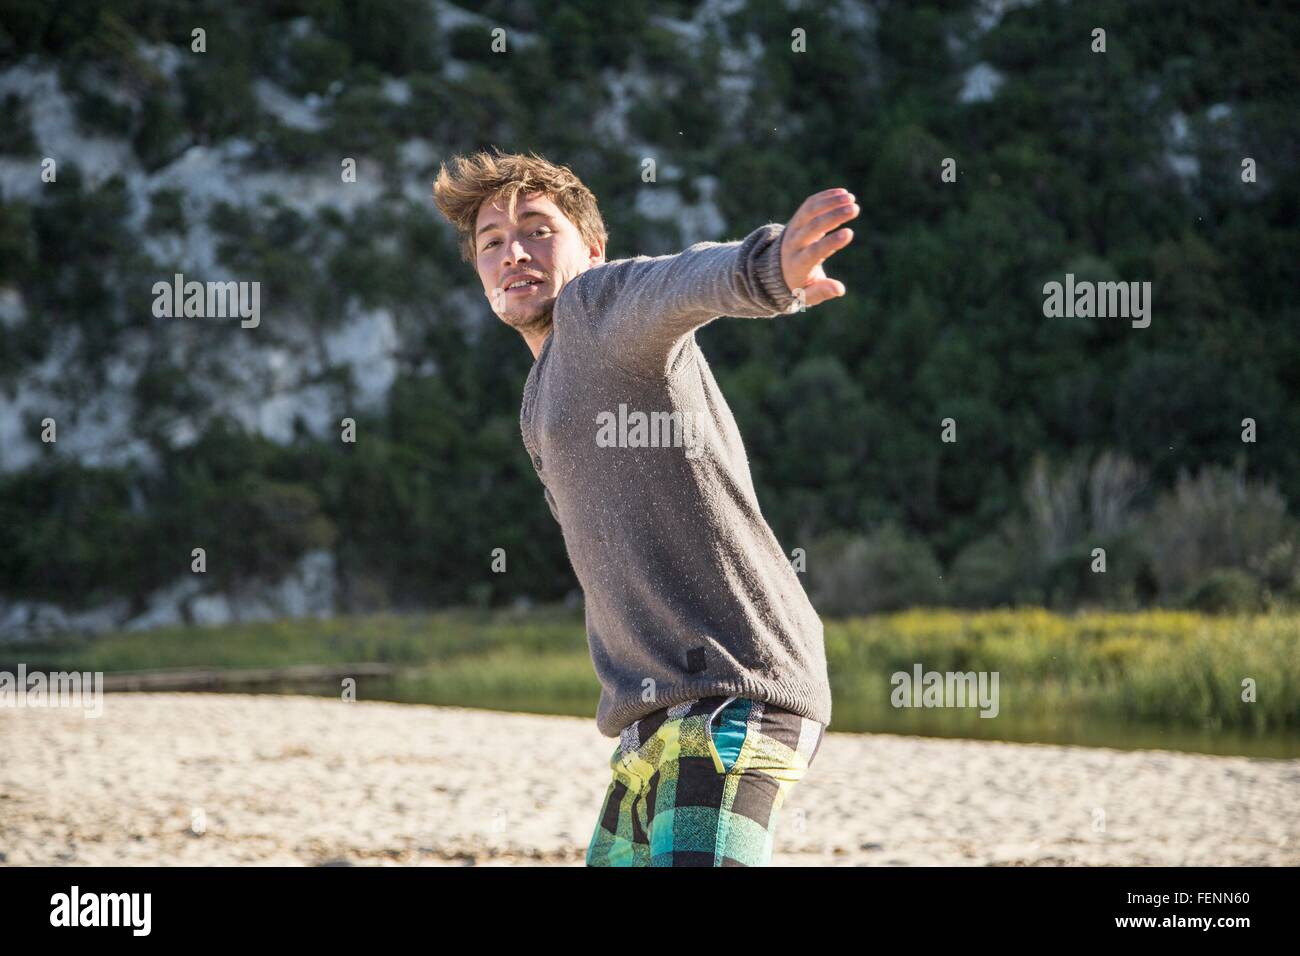 Vorderansicht des jungen Mannes am Strand bereit werfen Aktion, Blick in die Kamera Lächeln, Costa Smeralda, Sardinien, Italien Stockfoto